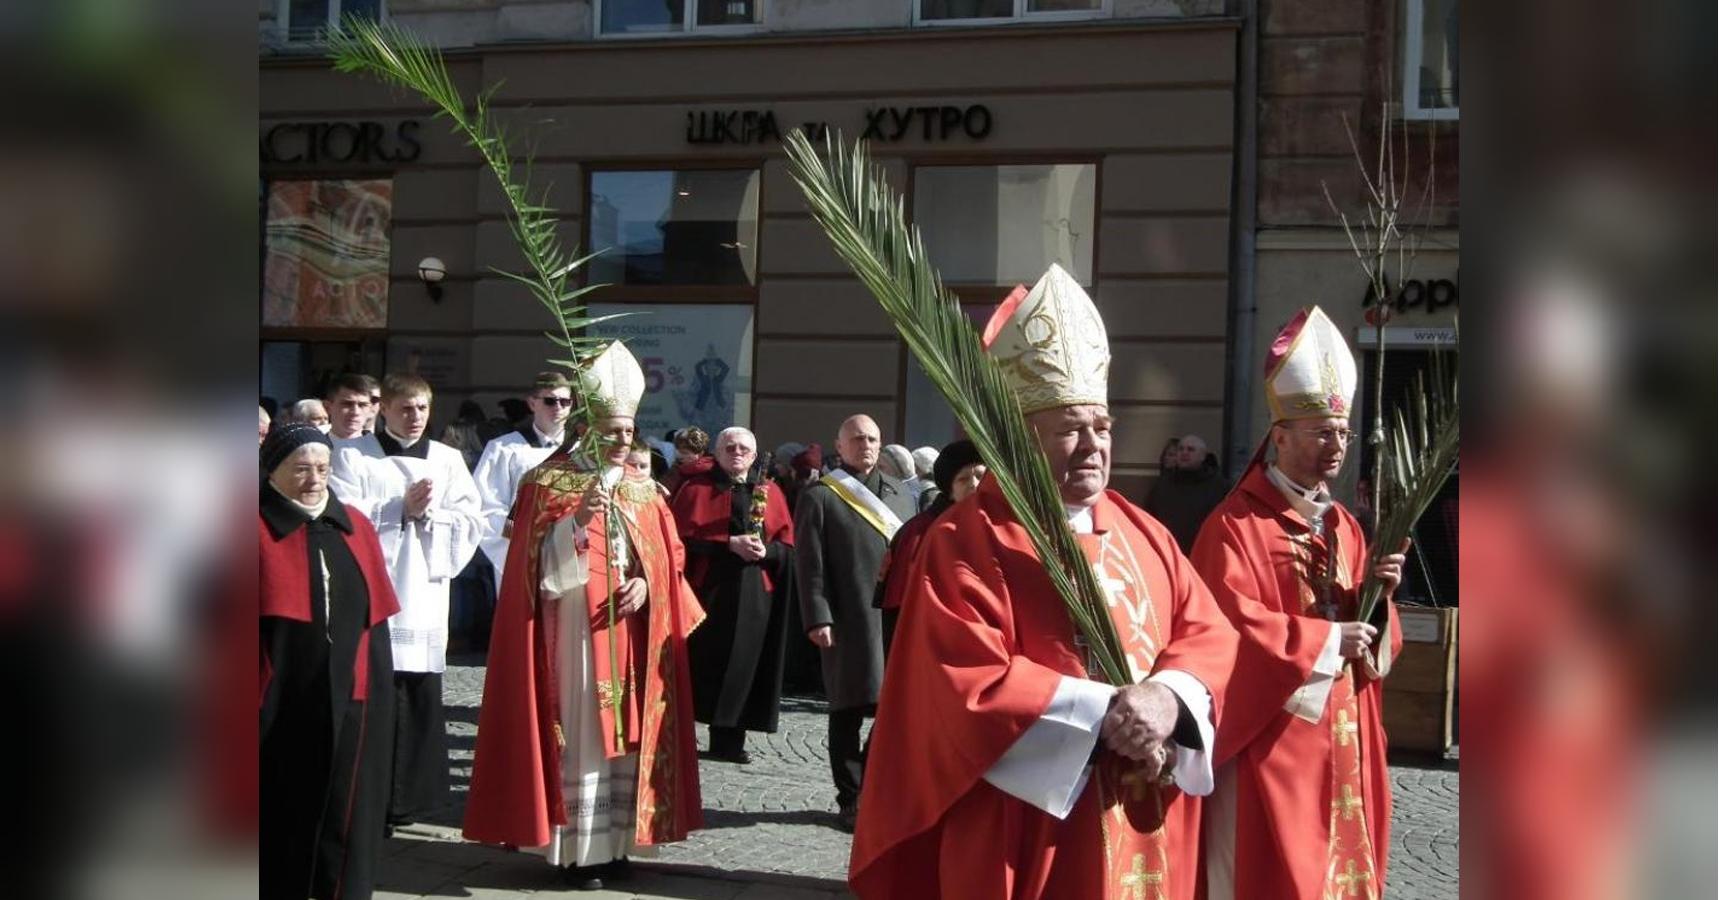 Вербное (Пальмовое) воскресенье у лютеран в 2020 году отмечается 5 апреля